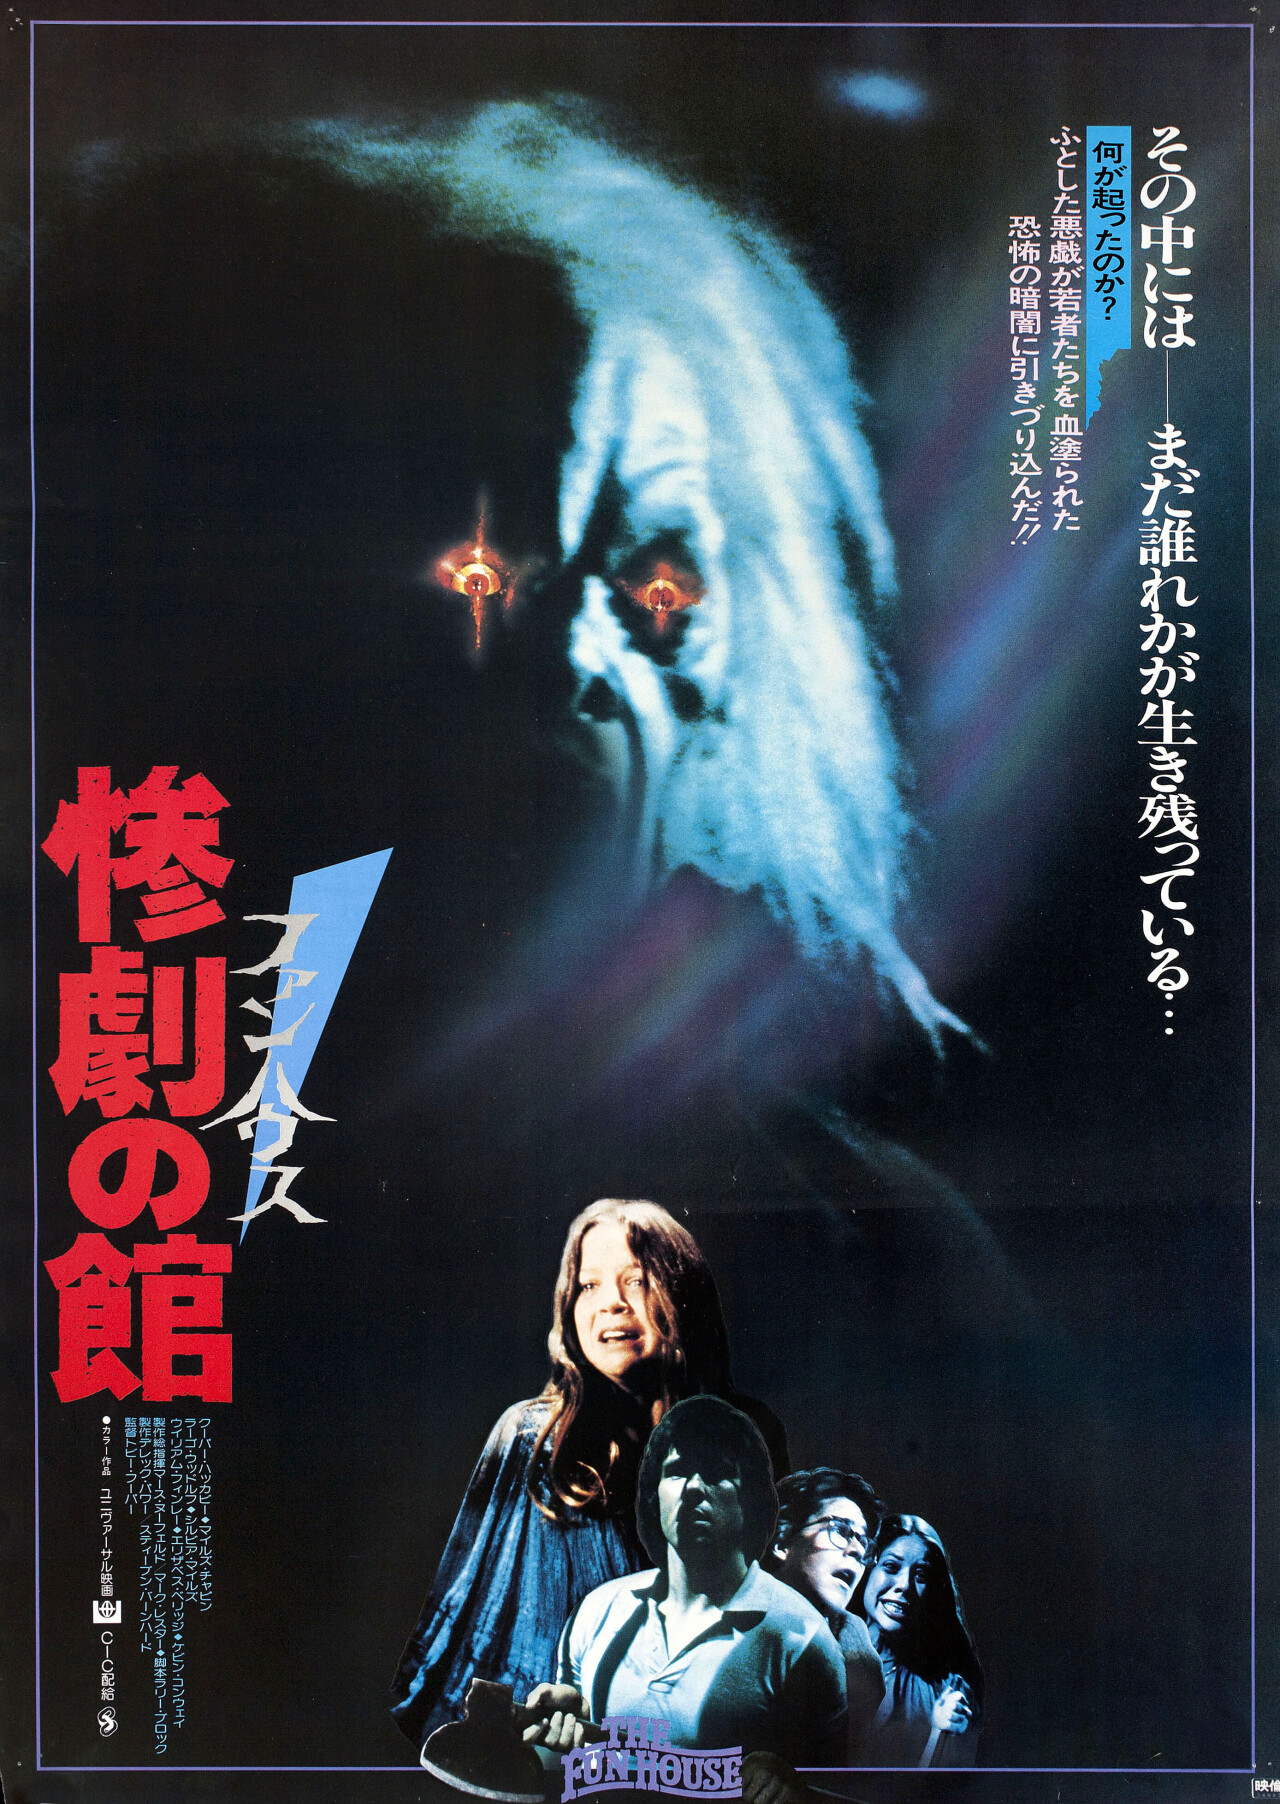 Смертельная забава (The Funhouse, 1981), режиссёр Тобе Хупер, японский постер к фильму (ужасы, 1981 год)